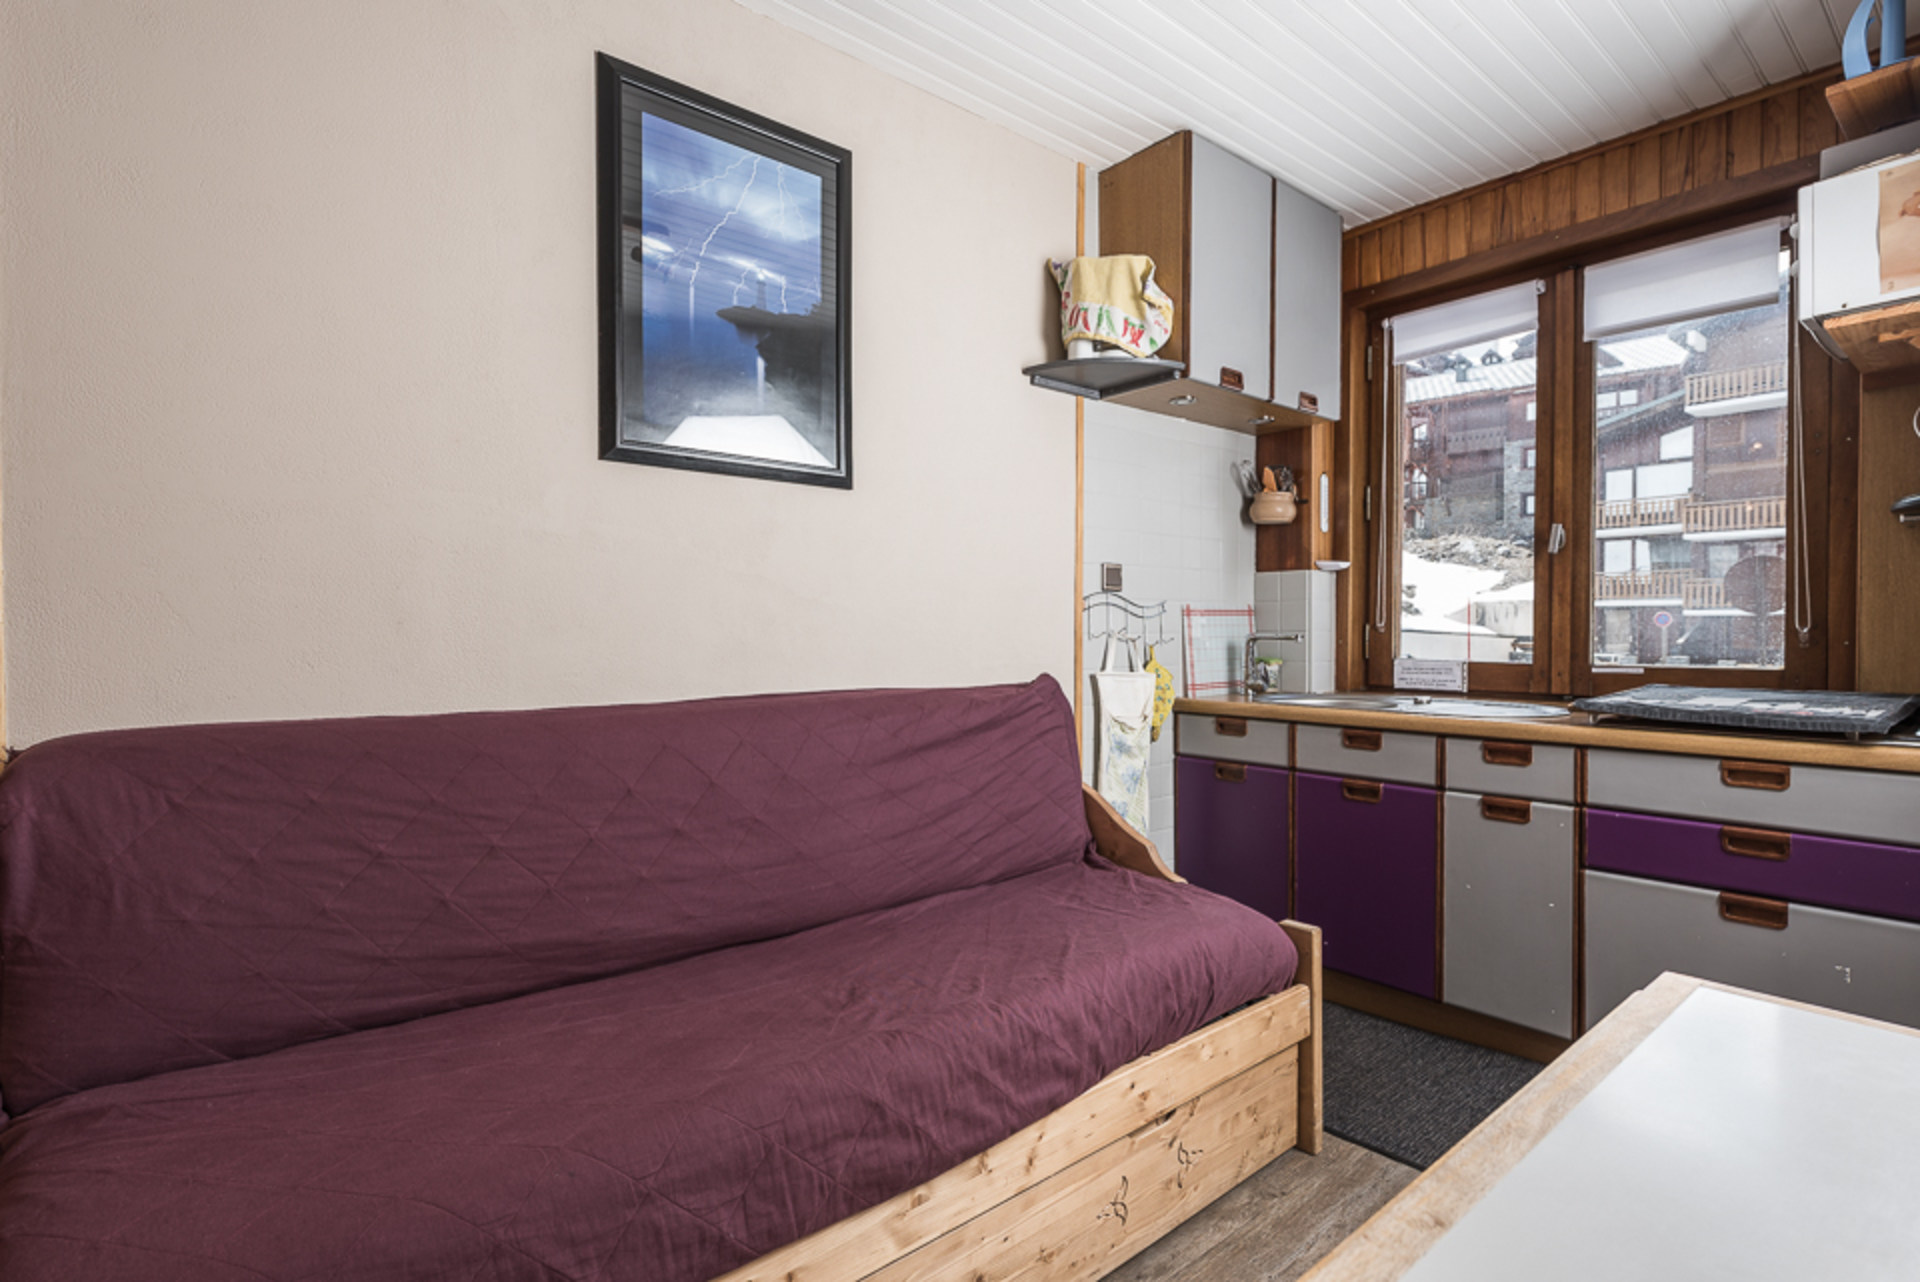 2 rooms 4 people - travelski home choice - Apartements CHAUDES ALMES - Tignes 2100 Le Lac